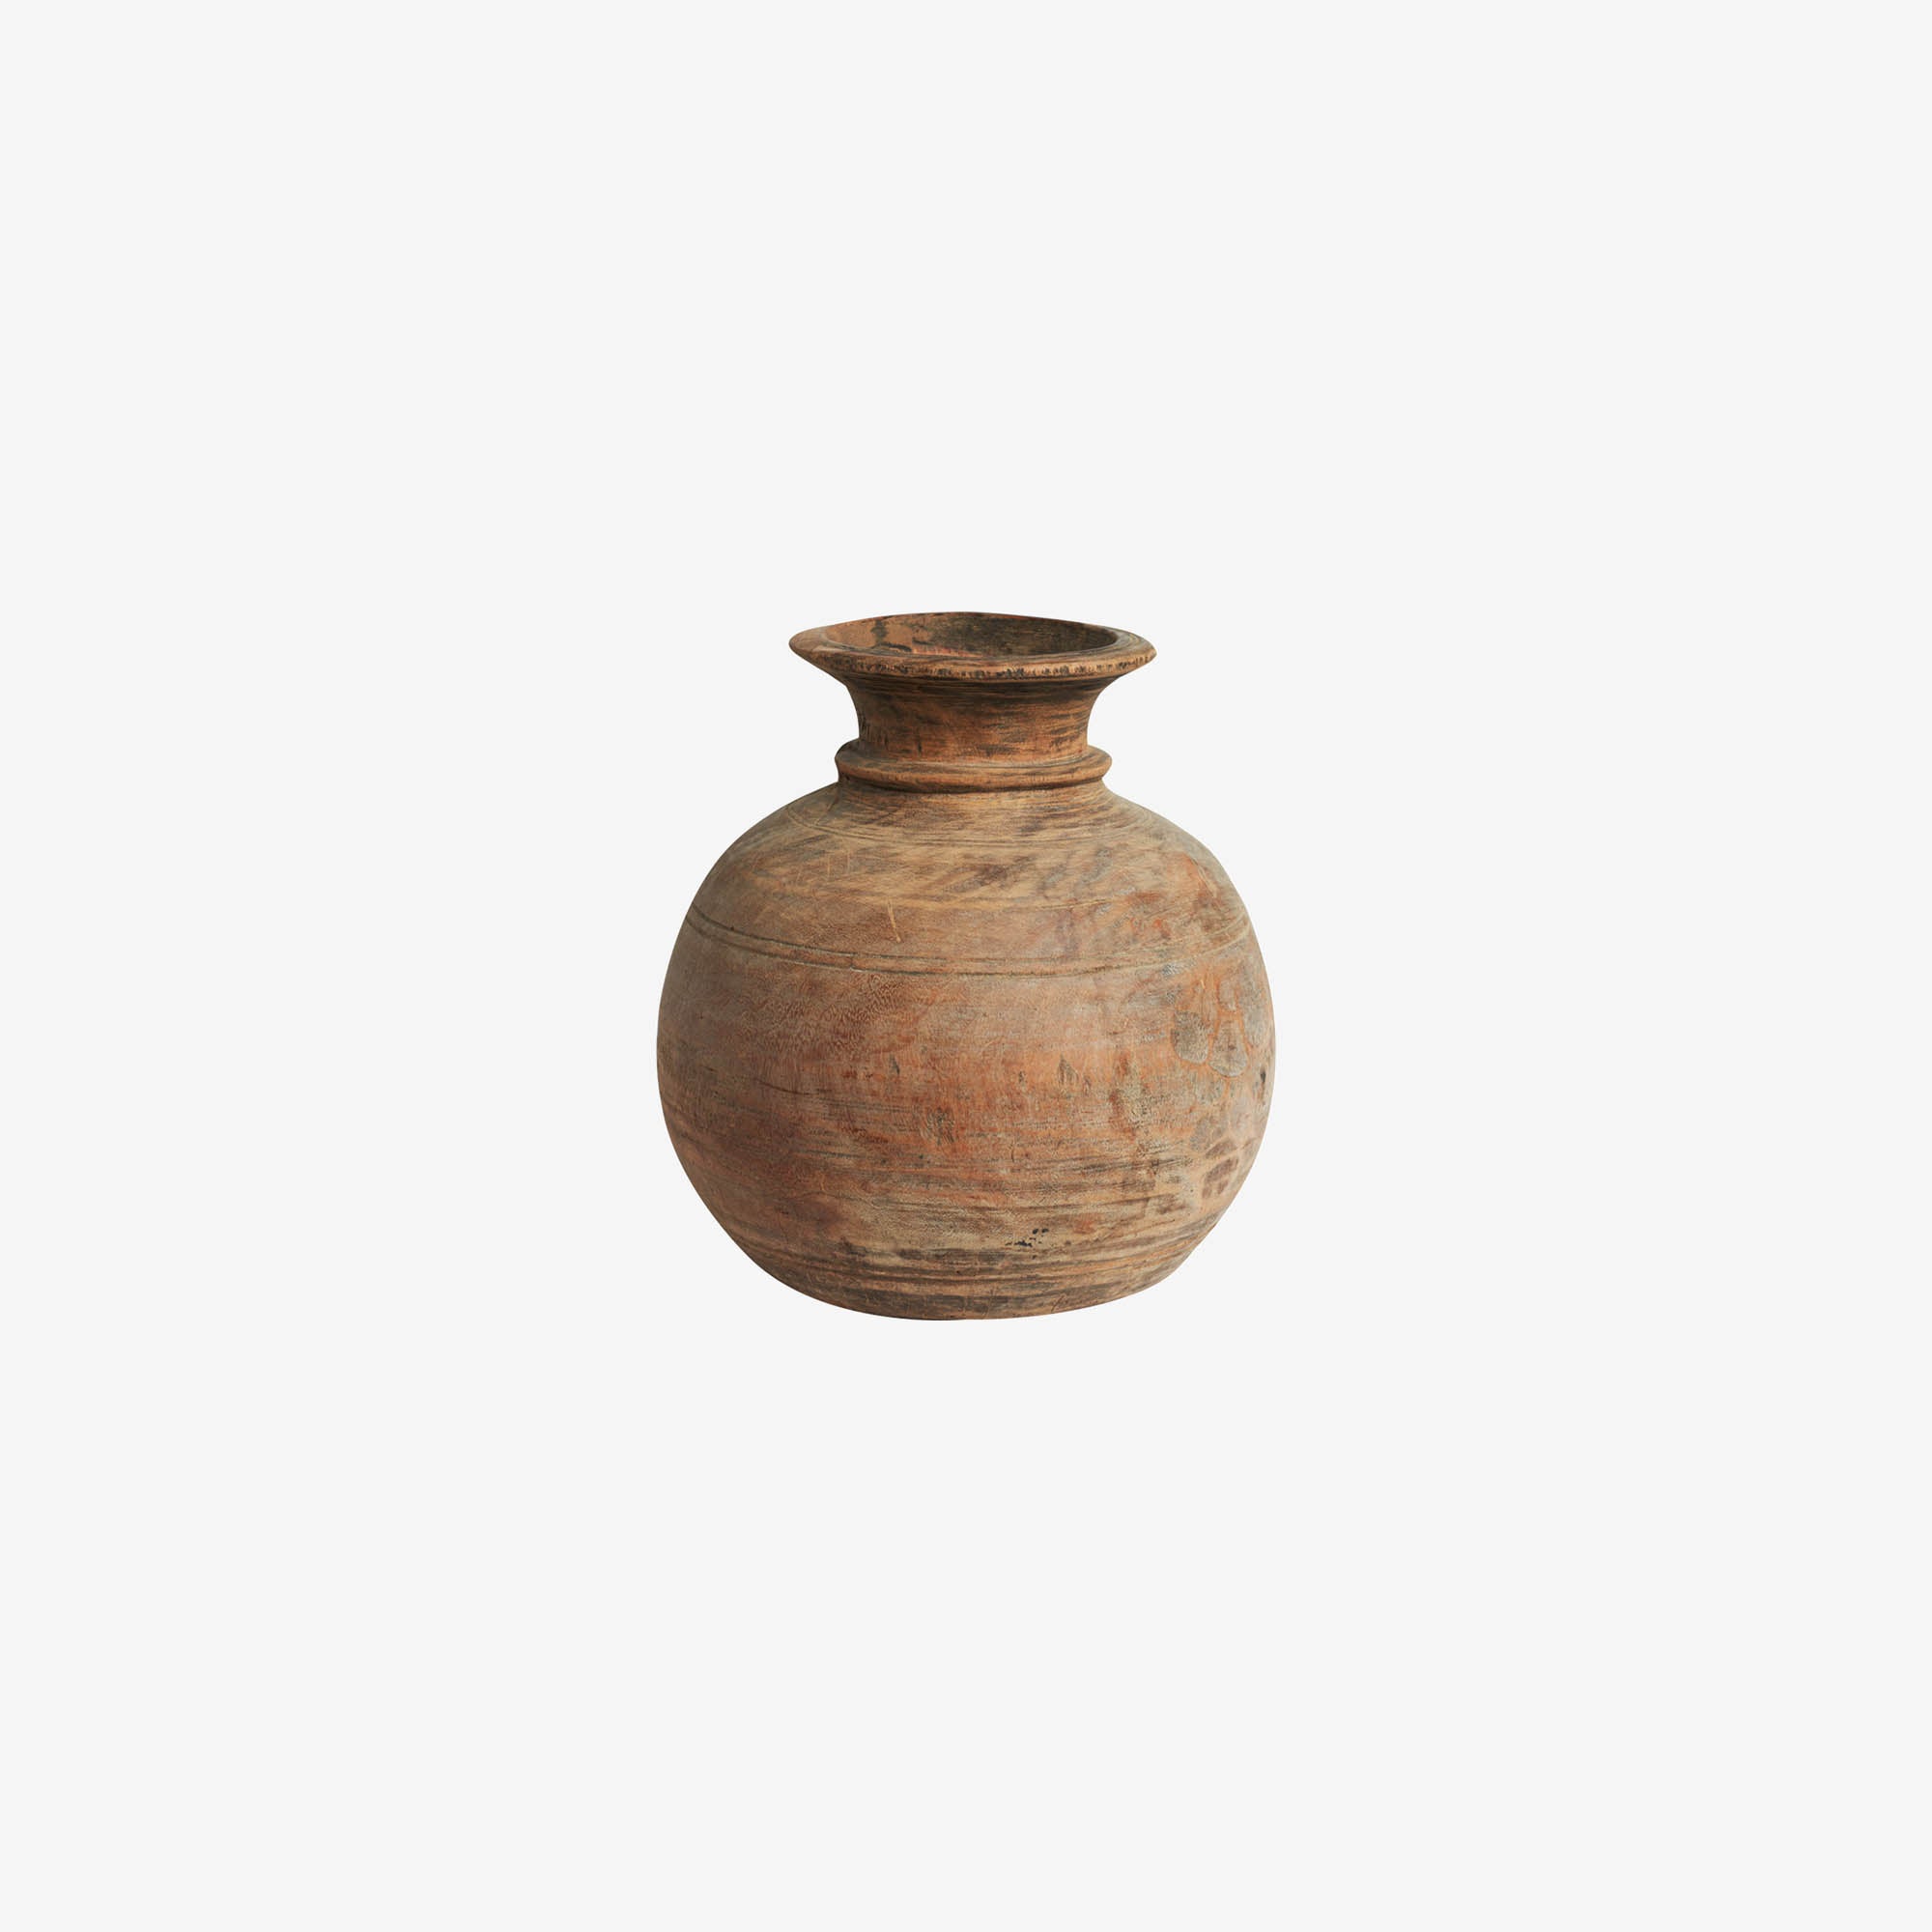 Wooden pot/vase – wood